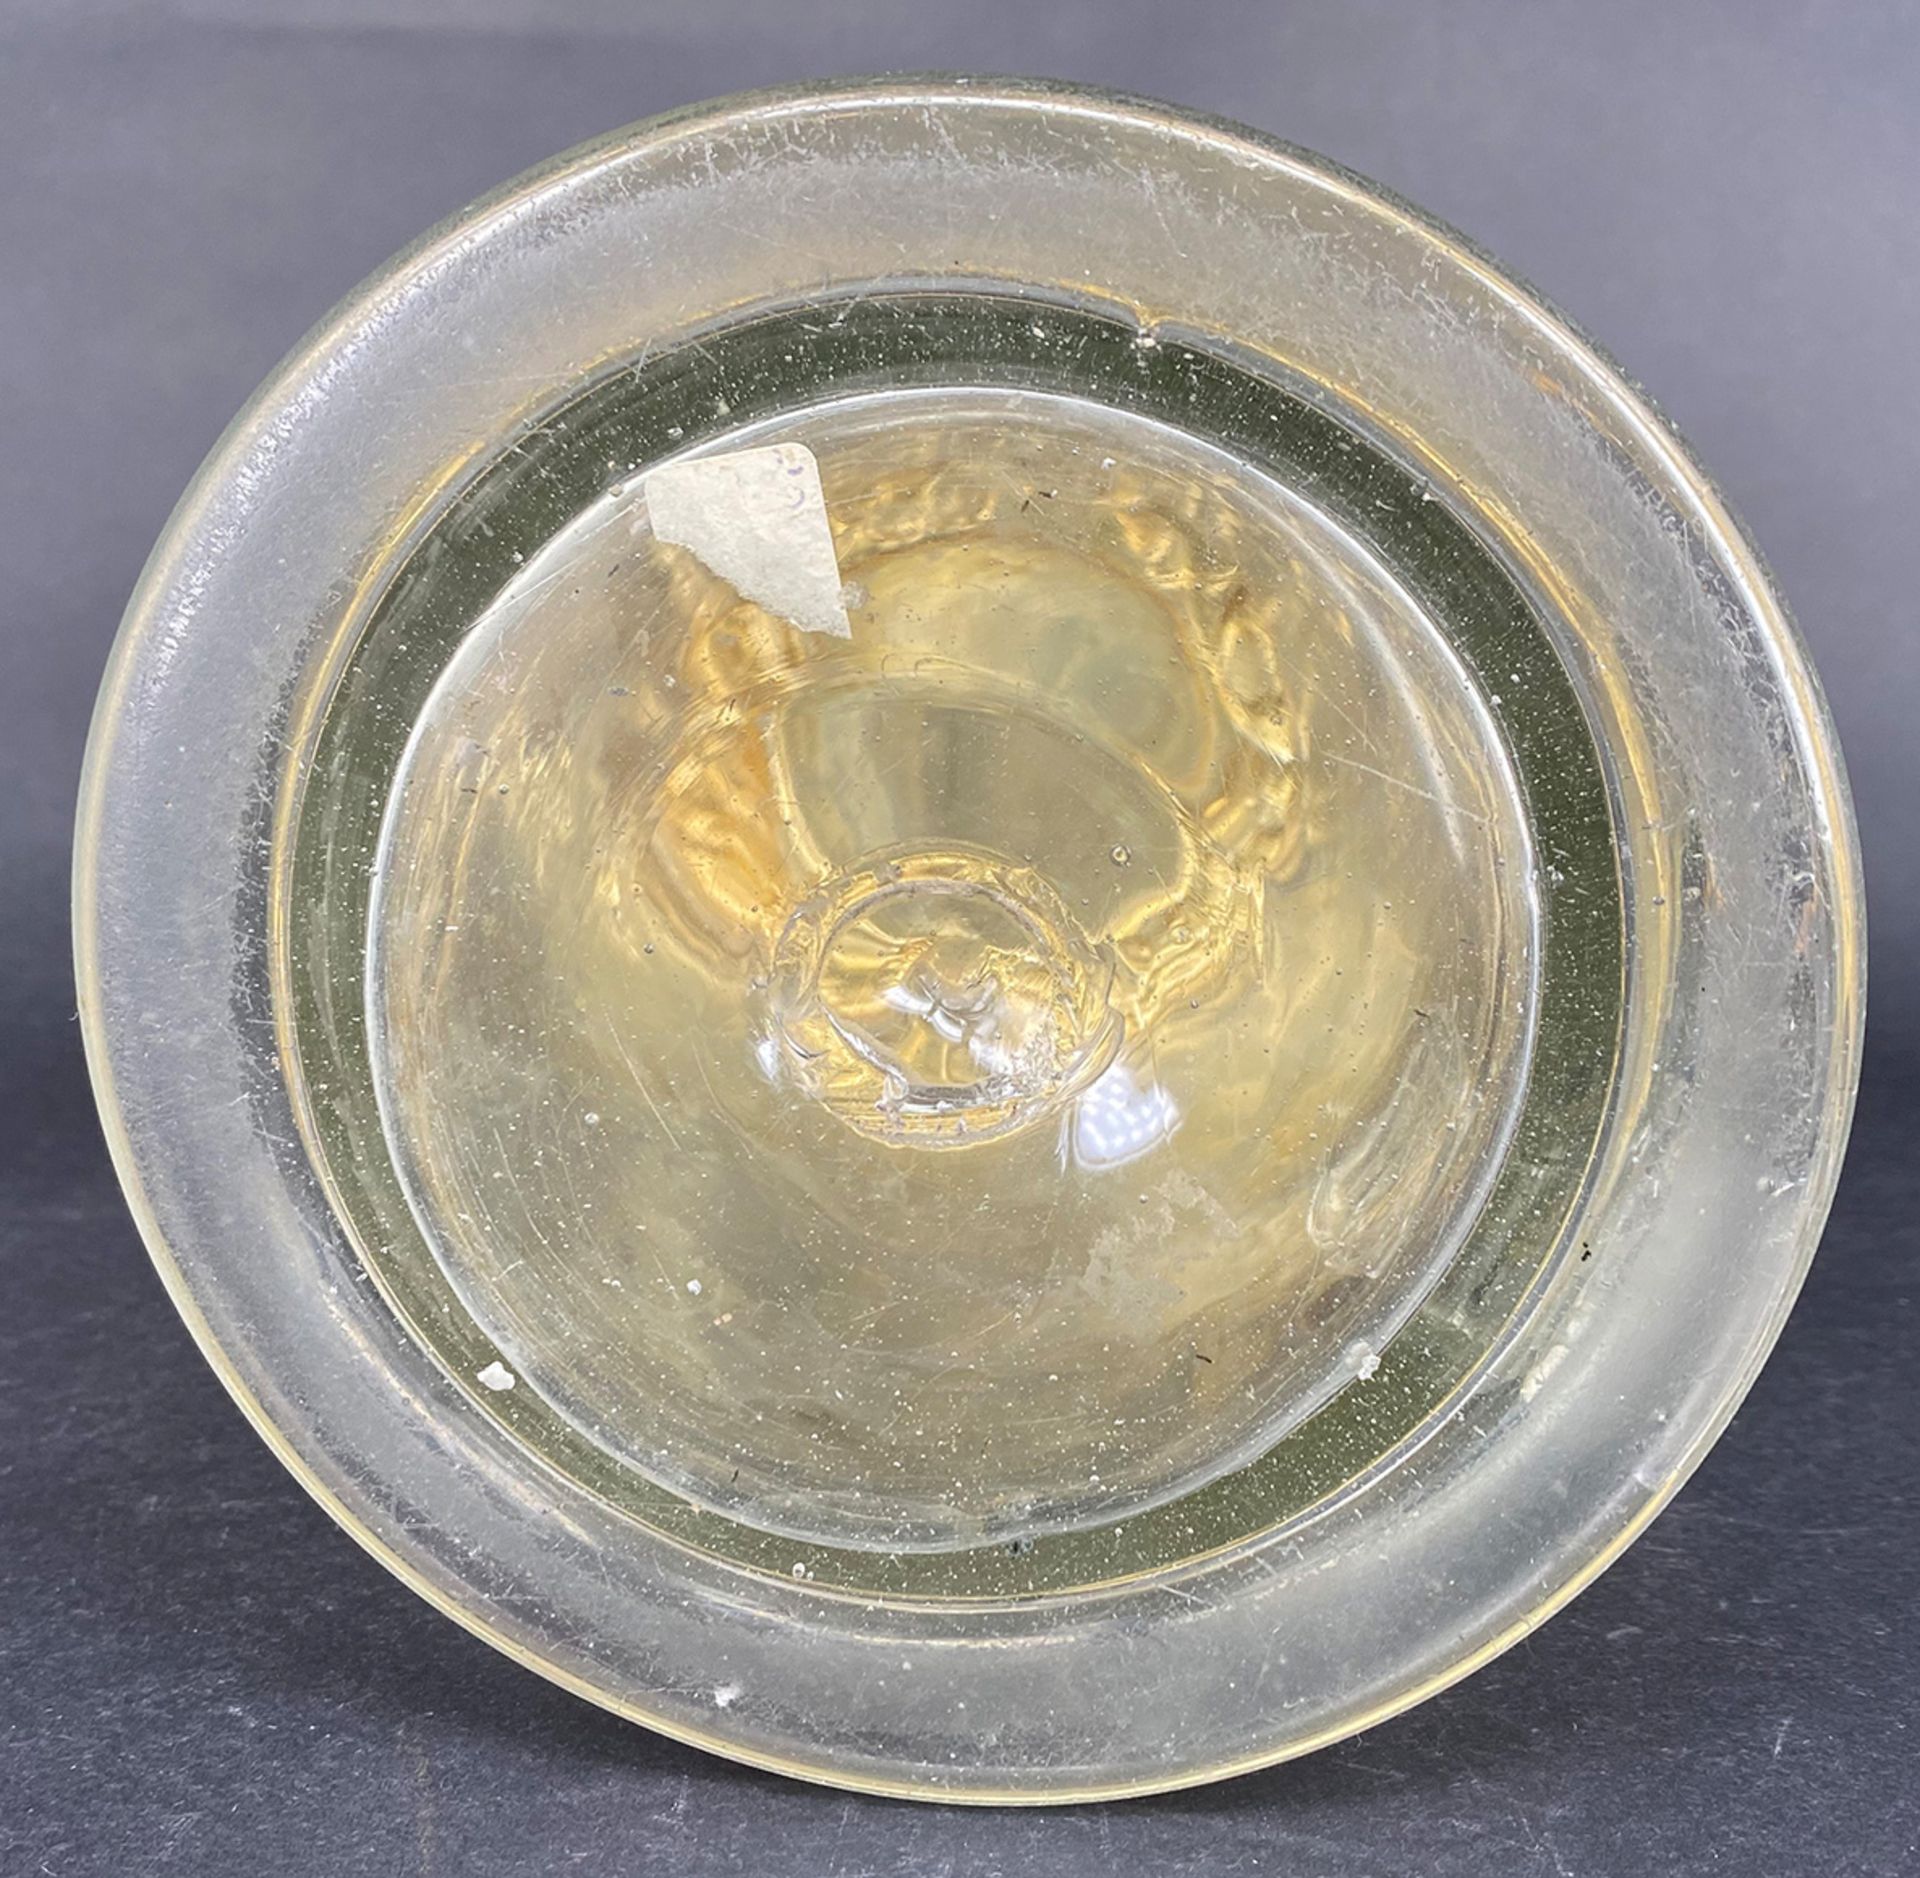 Barocker Walzenkrug, 18. Jh., Glaskrug mit Silberdeckel, innen vergoldet: zylindrischer, farbloser - Bild 7 aus 10